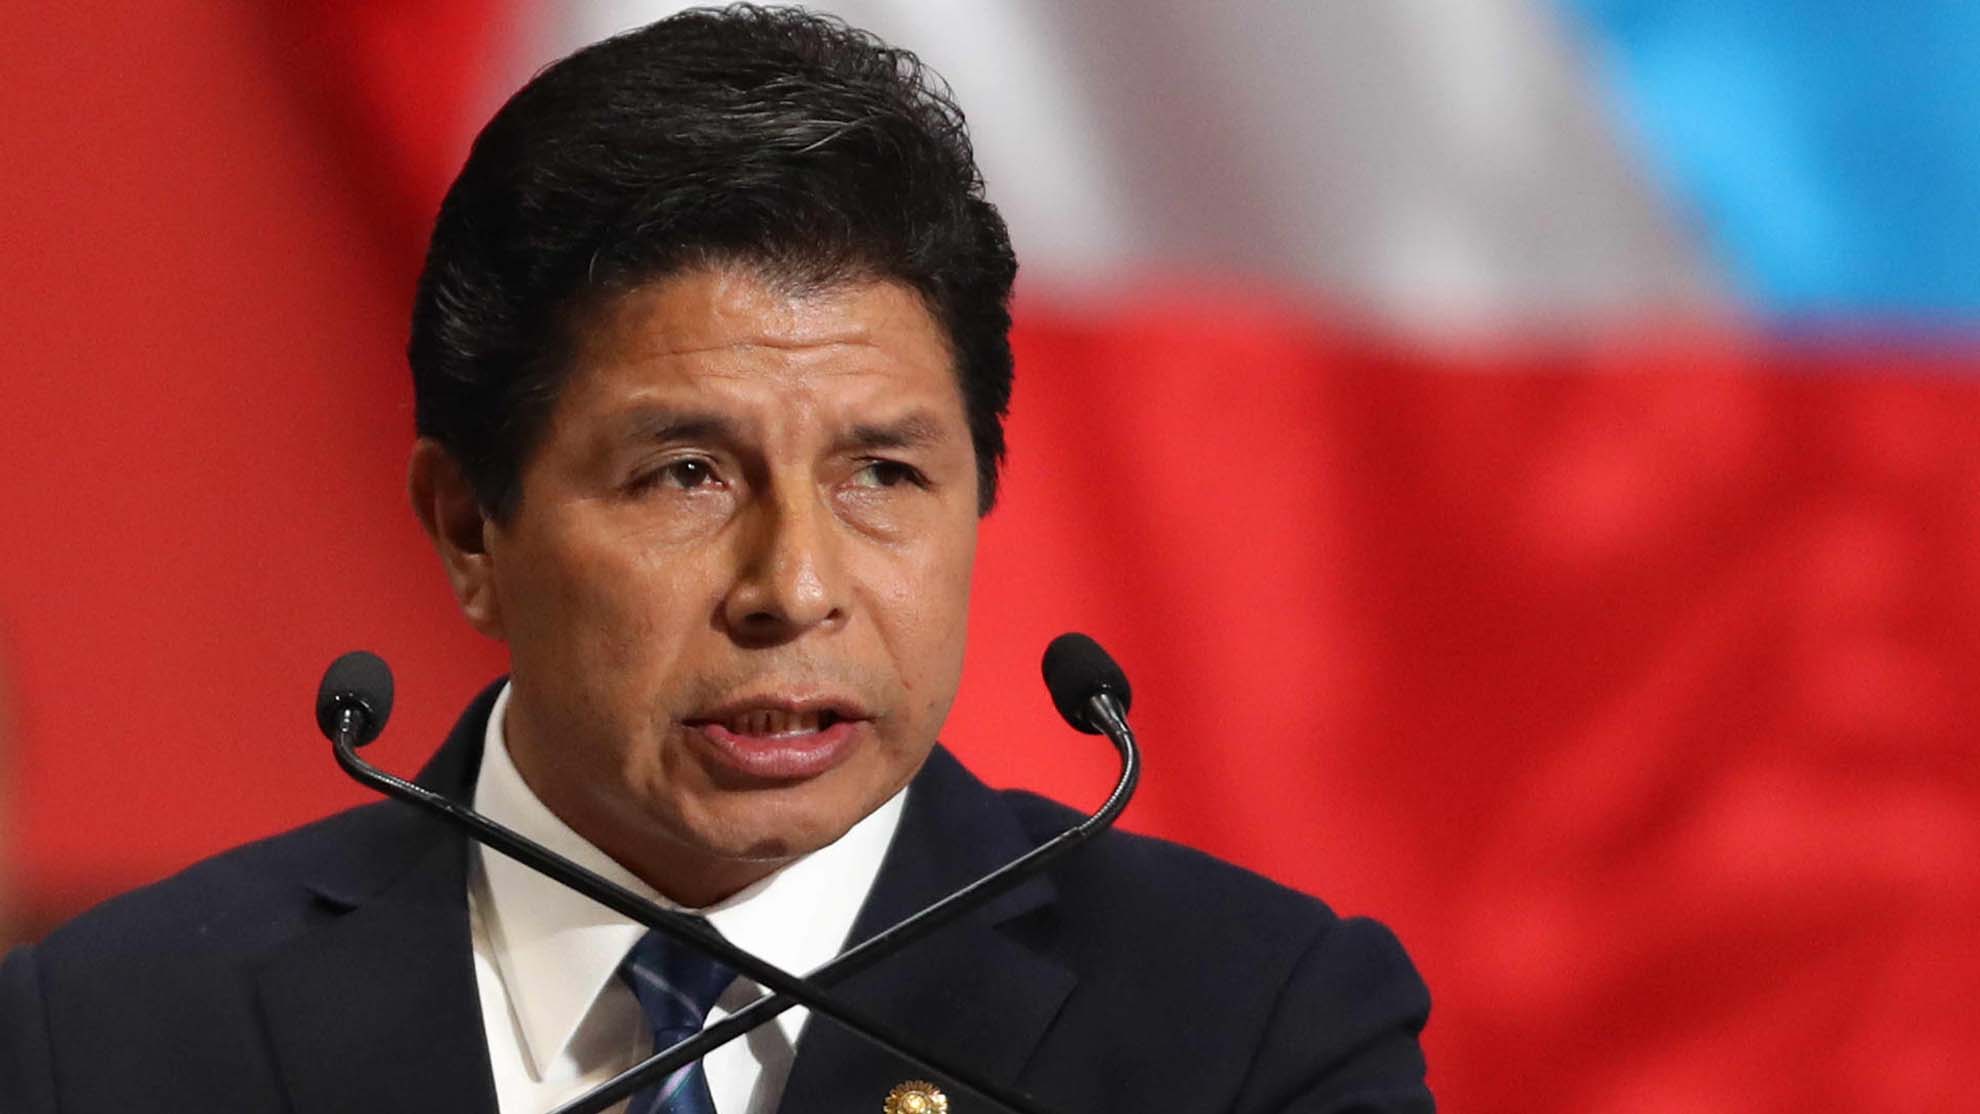 Renuncia del primer ministro de Perú provoca que presidente renueve todo el gabinete